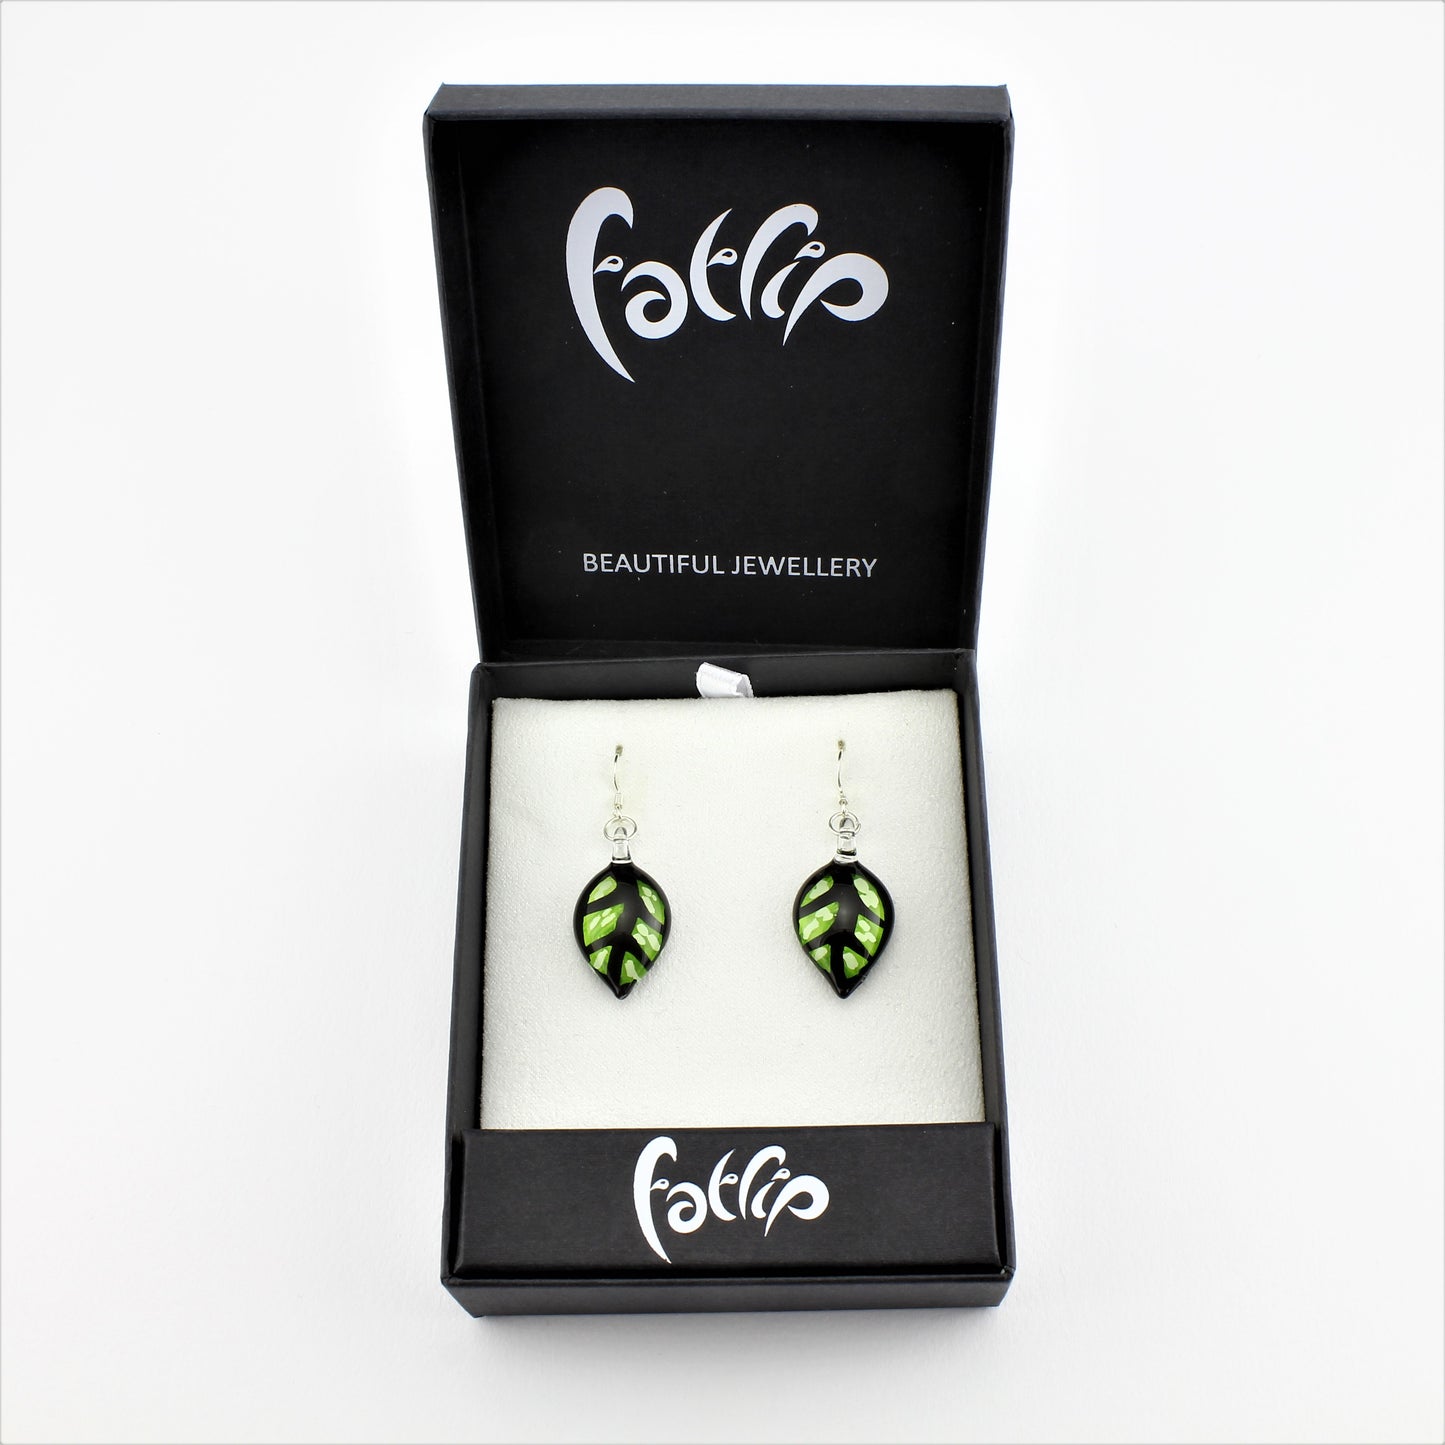 SWE599 - Green Leaf Glass Earrings